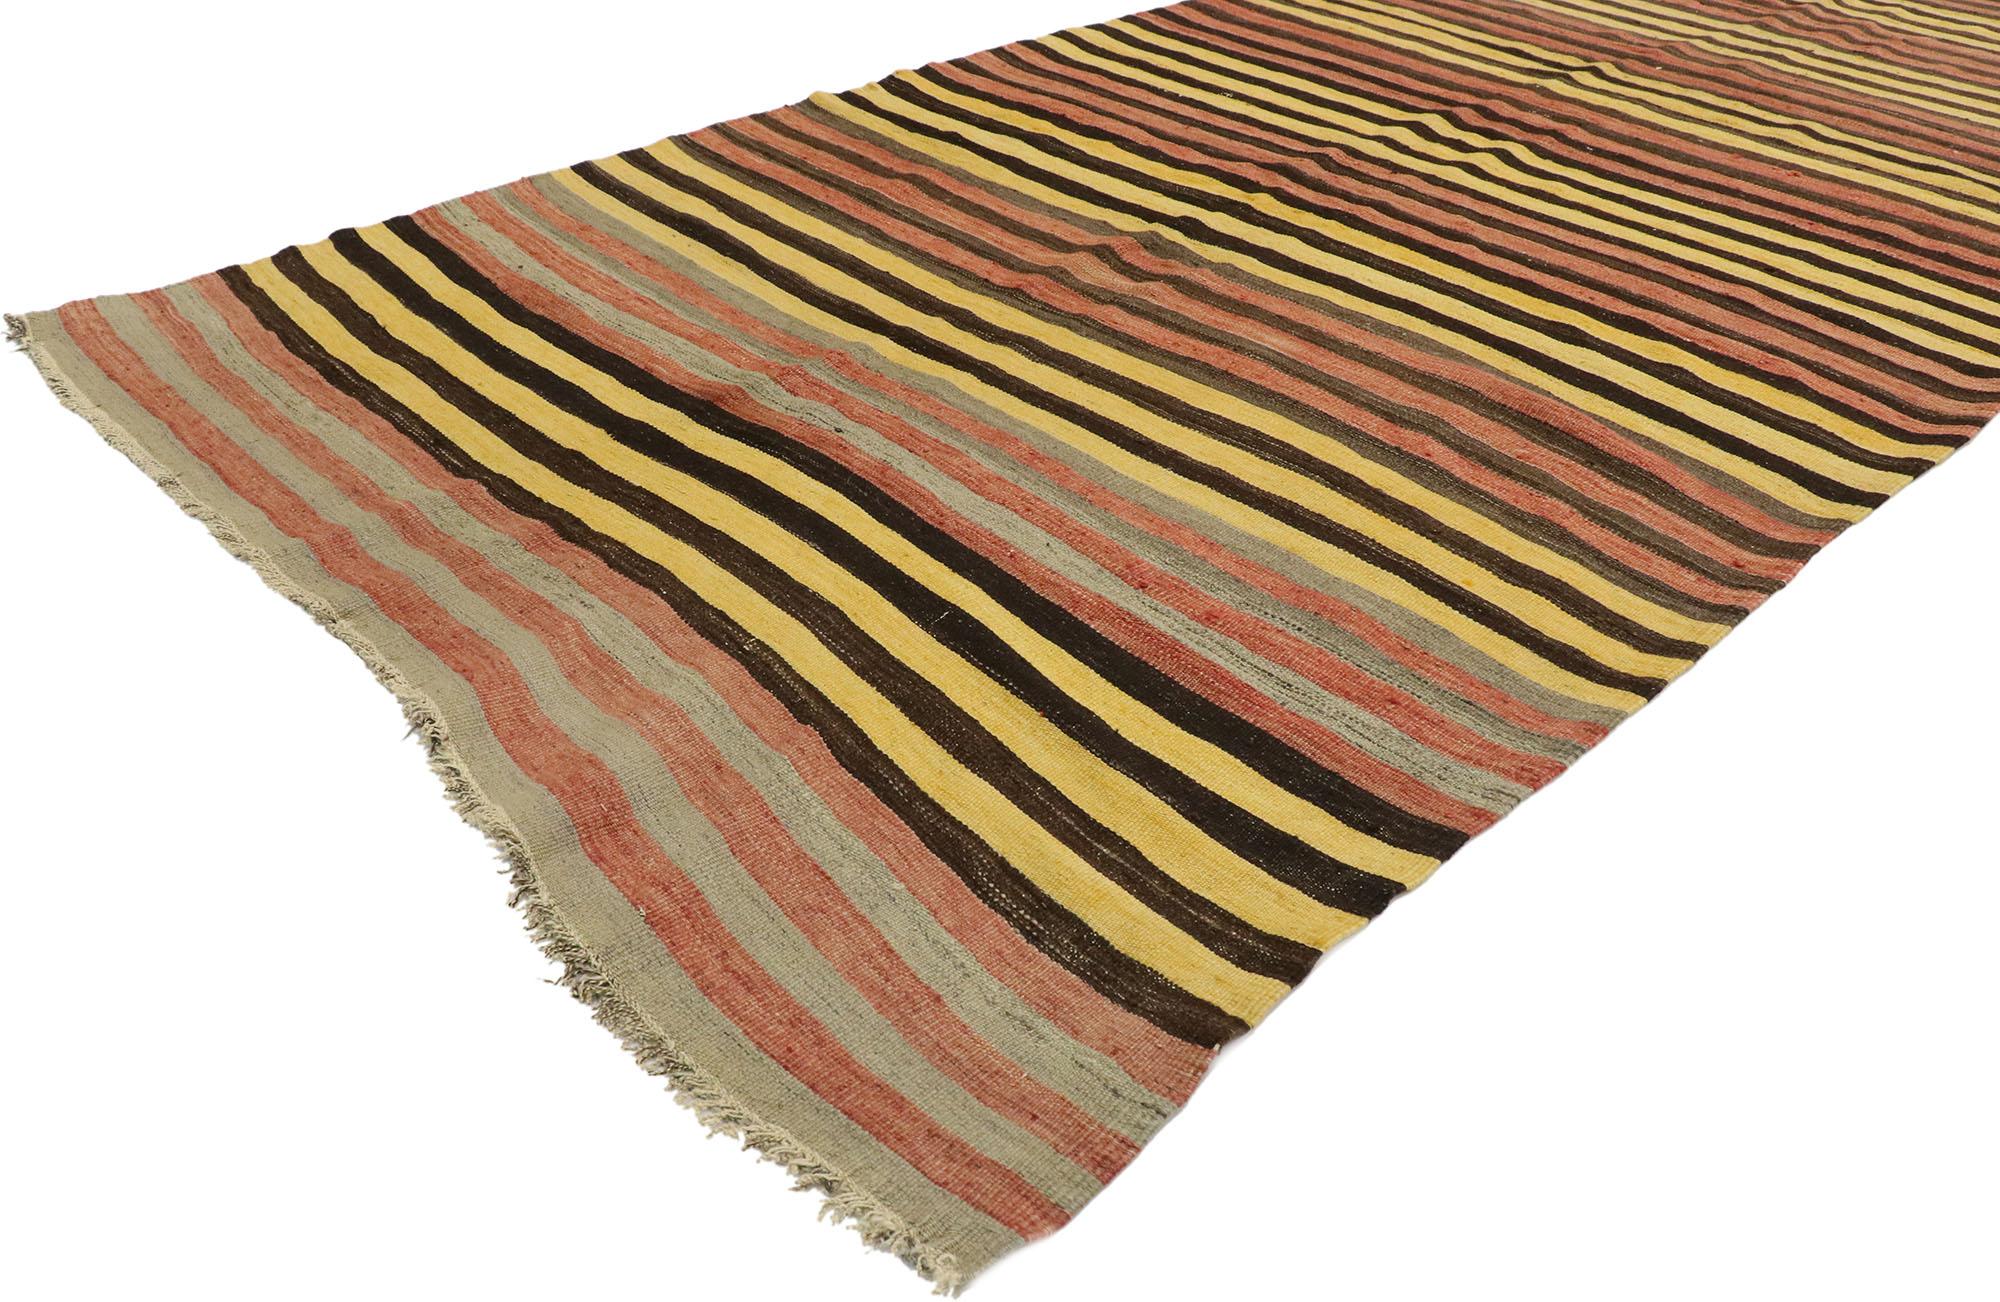 53116 tapis Kilim turc vintage à rayures, de style Mid-Century Modern. Avec ses teintes chaudes et sa beauté sauvage, ce tapis kilim à rayures en laine tissé à la main parvient à marier des éléments de design contemporains, modernes et